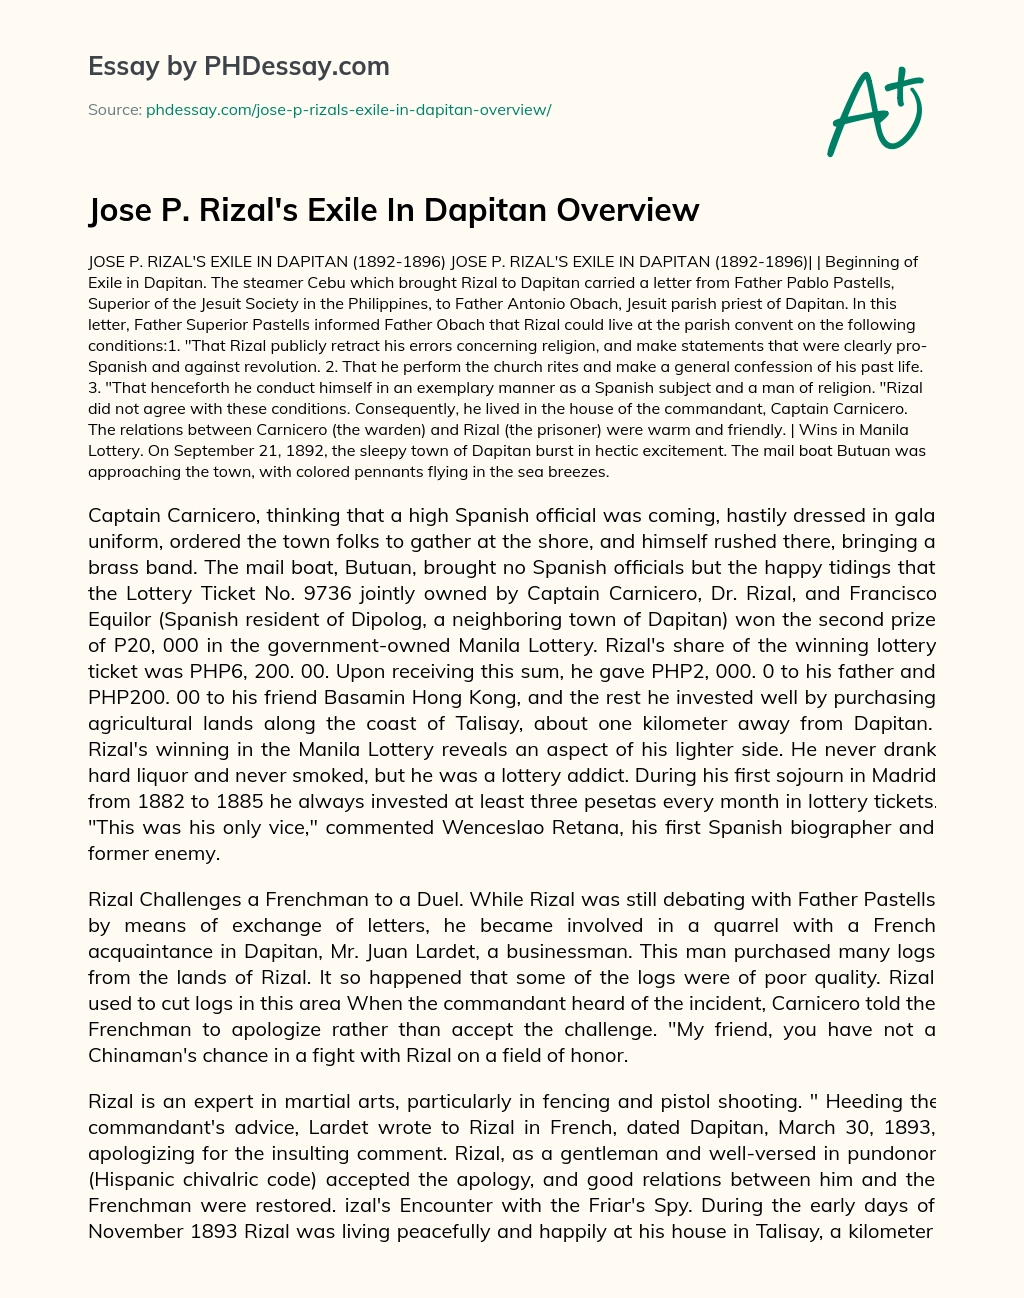 Jose P. Rizal’s Exile In Dapitan Overview essay